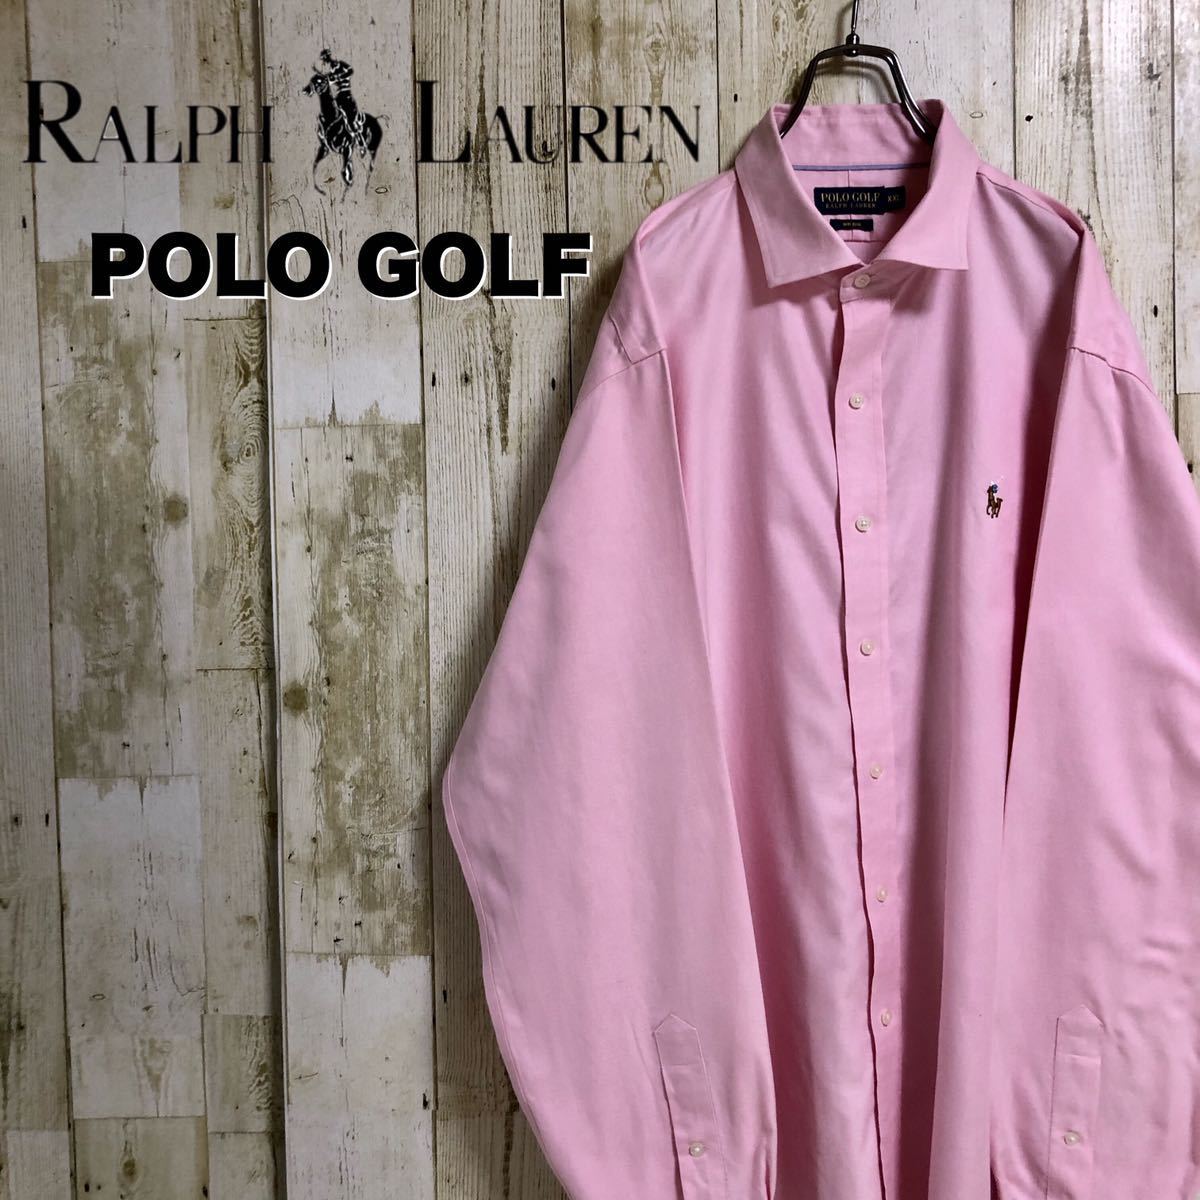 POLO GOLF Ralph Lauren ポロゴルフ ラルフローレン ワンポイント 刺繍ポニー ビッグサイズ ボタンダウンシャツ 長袖シャツ  XXL 古着